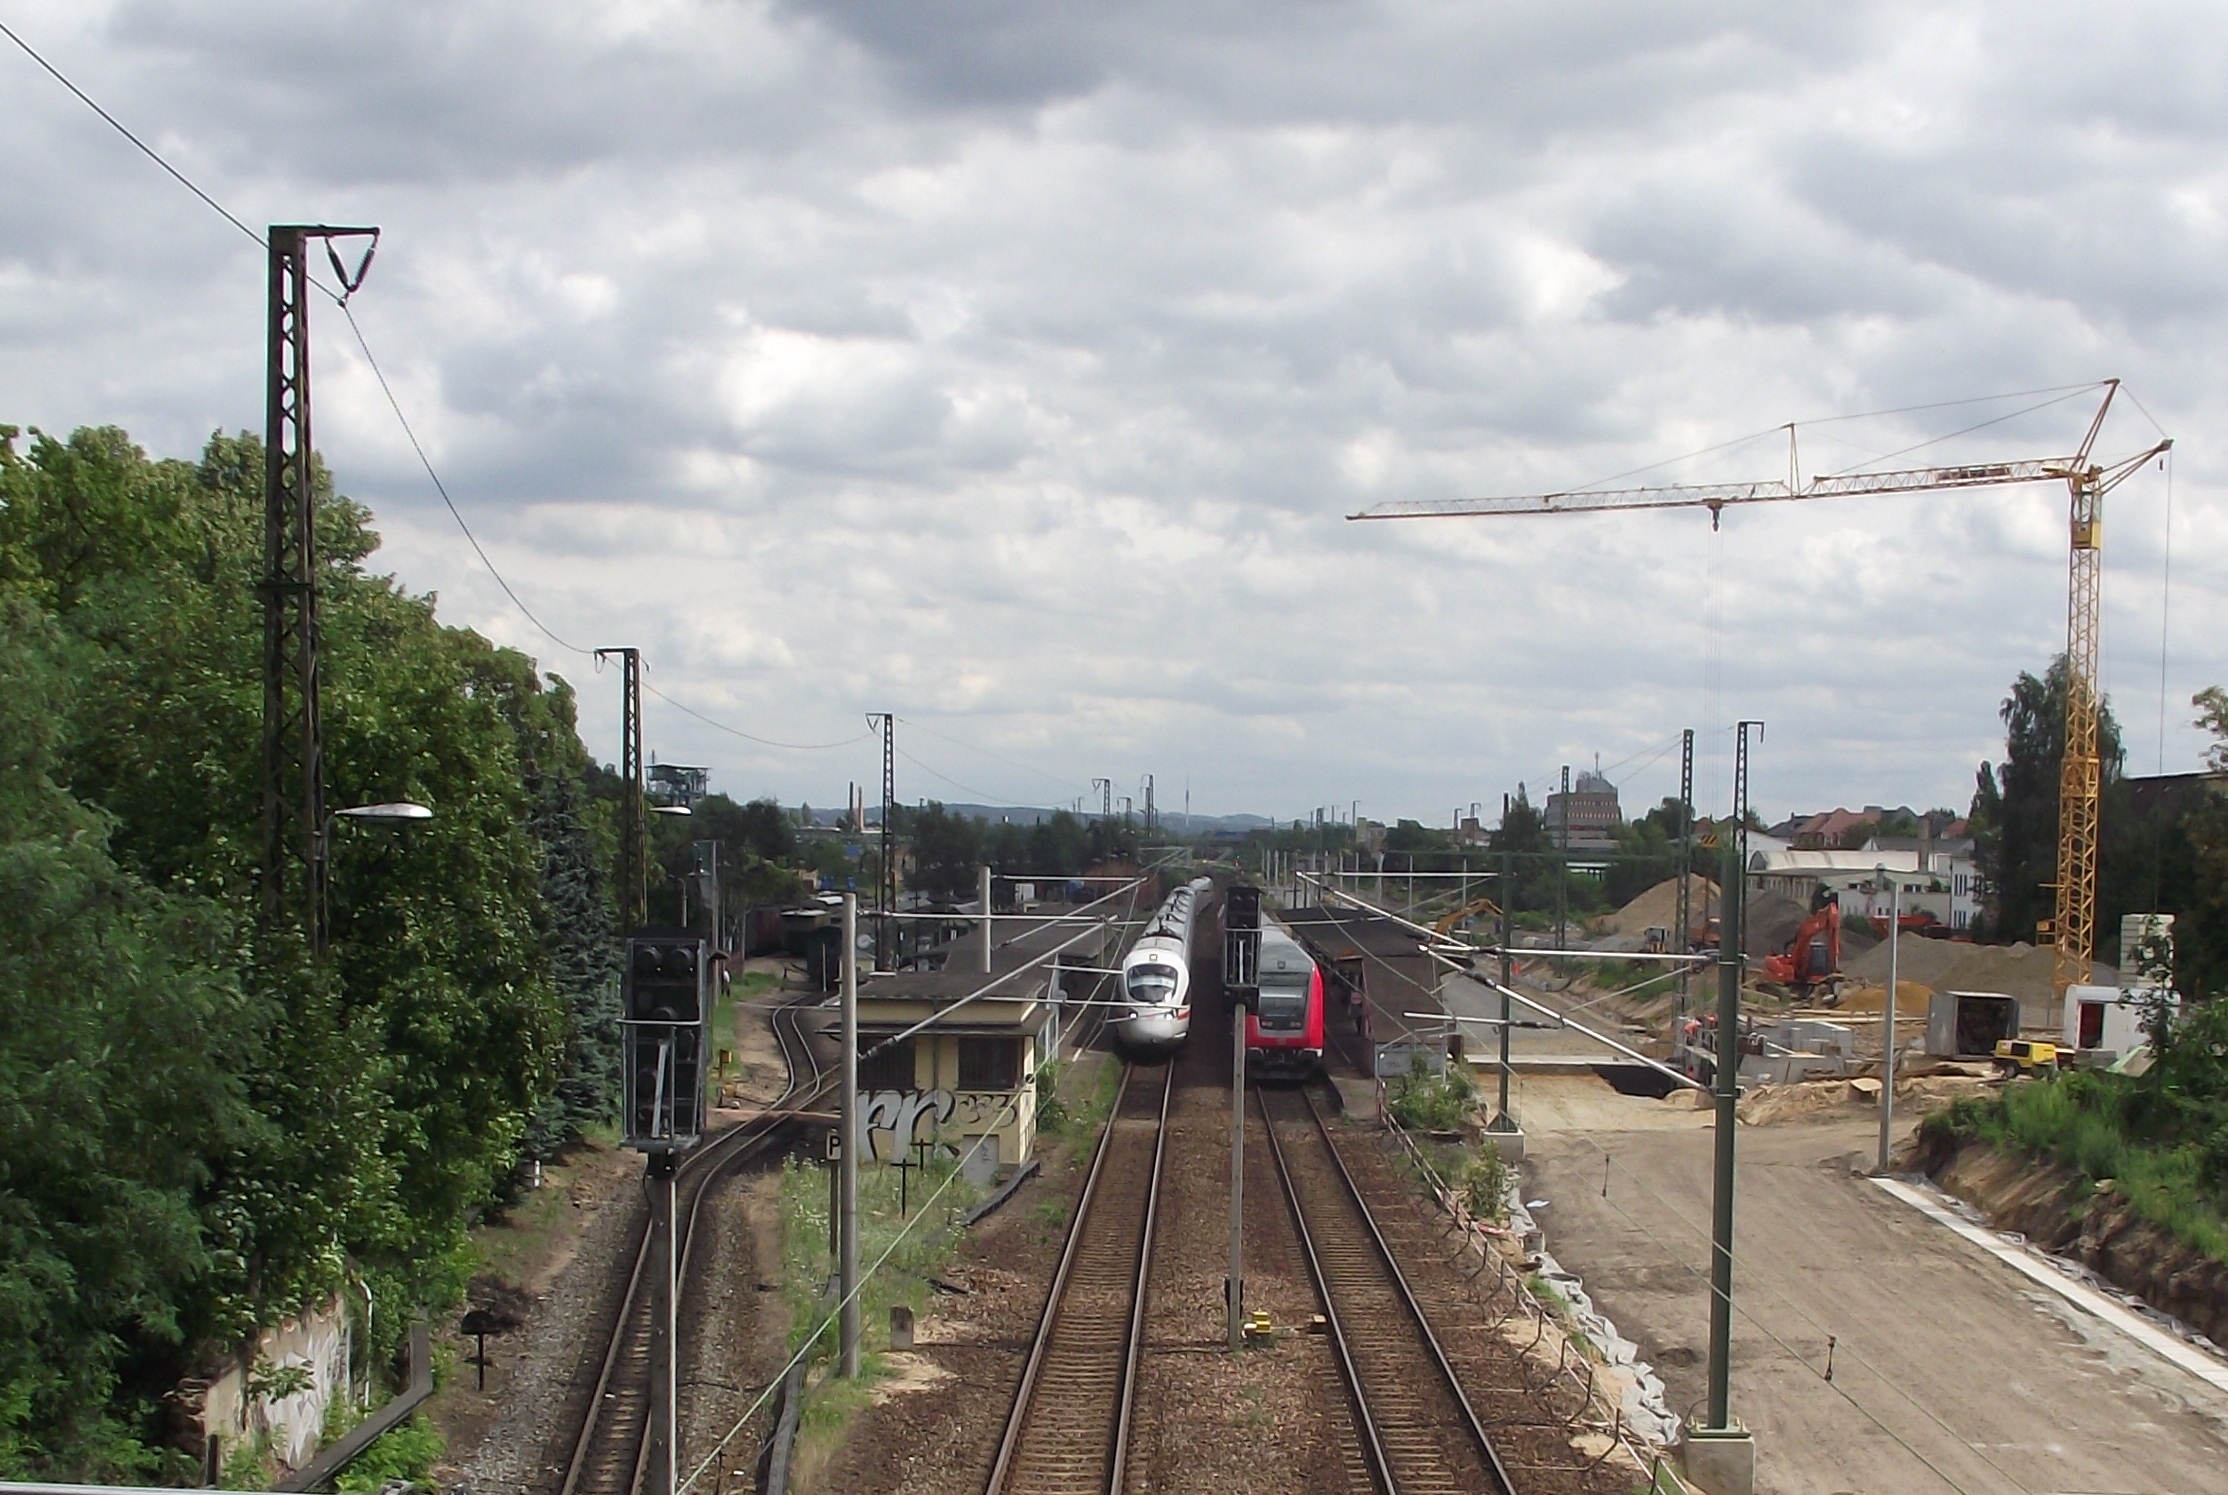 Radebeul Ost vágányai. Bal szélen a keskeny sínpár, mellette a DB AG két vágánya, tőlük jobbra pedig a Verkehrsprojekt Deutsche Einheit építési területe látható. Az ICE félreállt, mert az építkezés miatt a következő állomásköz egyvágányú